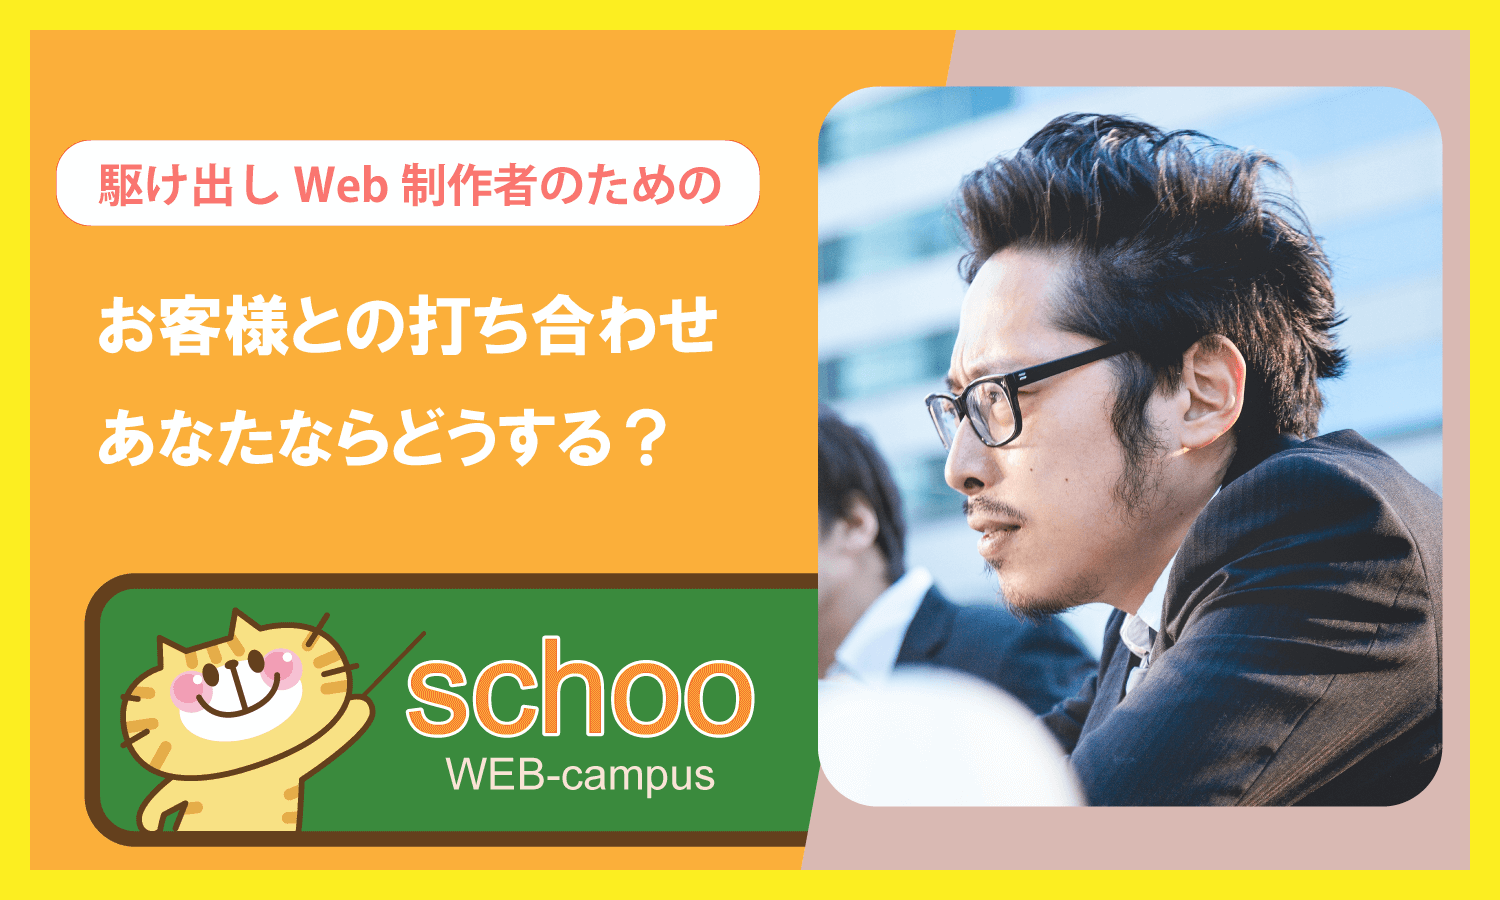 schoo授業感想「Web制作者のための：お客様との打ち合わせの進め方」